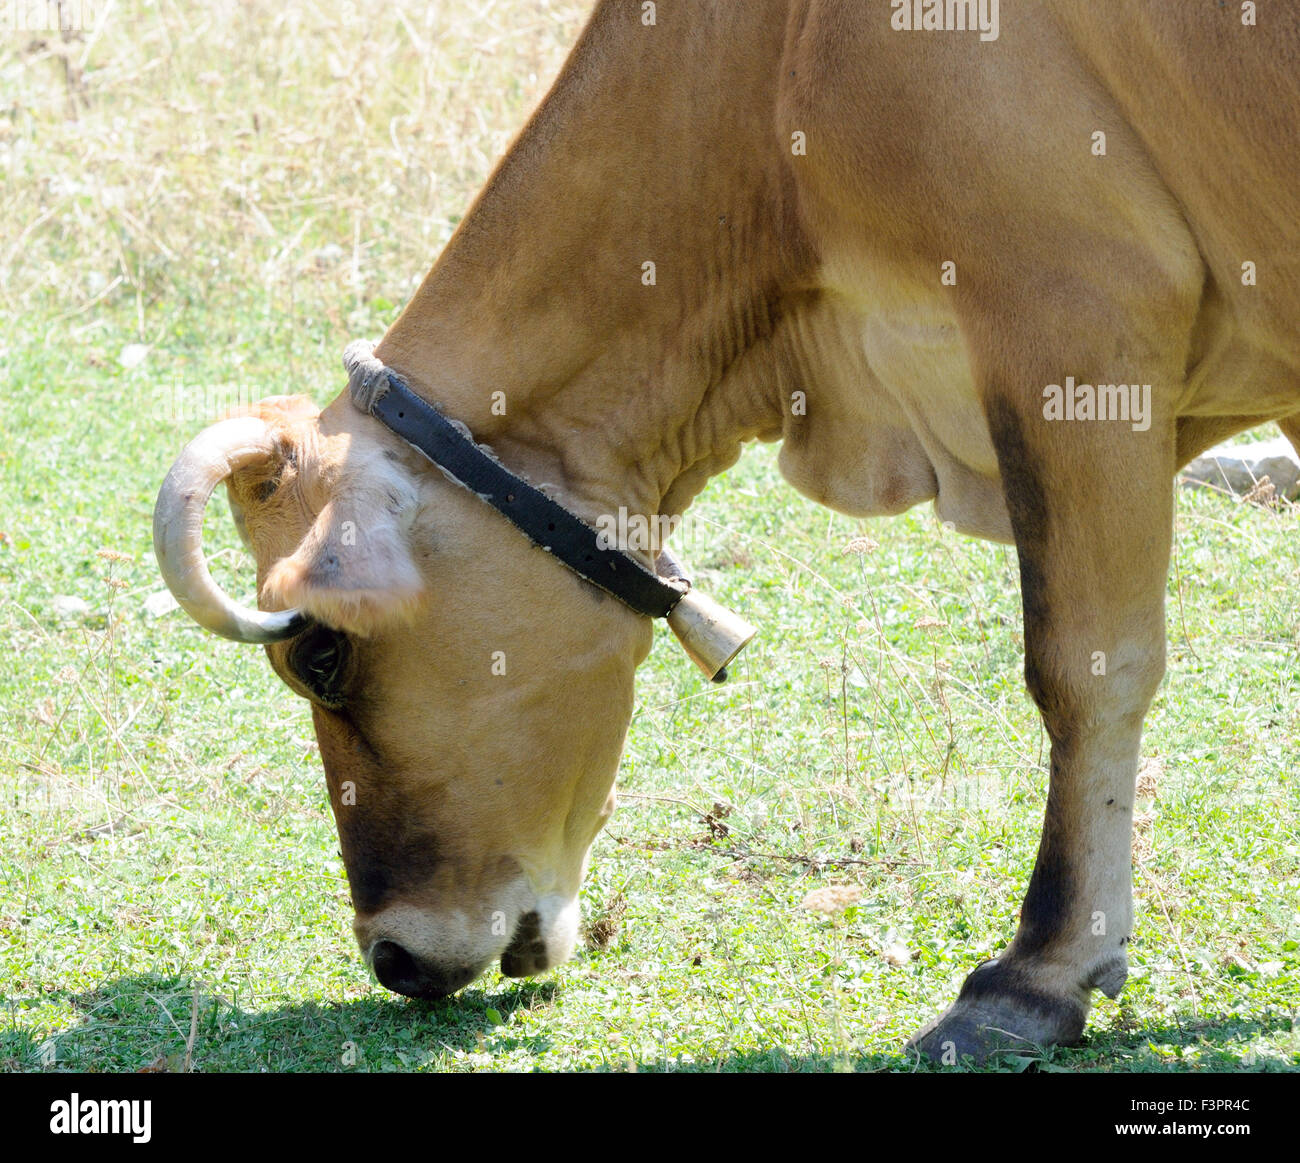 Eine Kuh mit einer Glocke um den Hals weidet spärliche Gras in einem Bergtal. Theth Thethi Albanien. Stockfoto